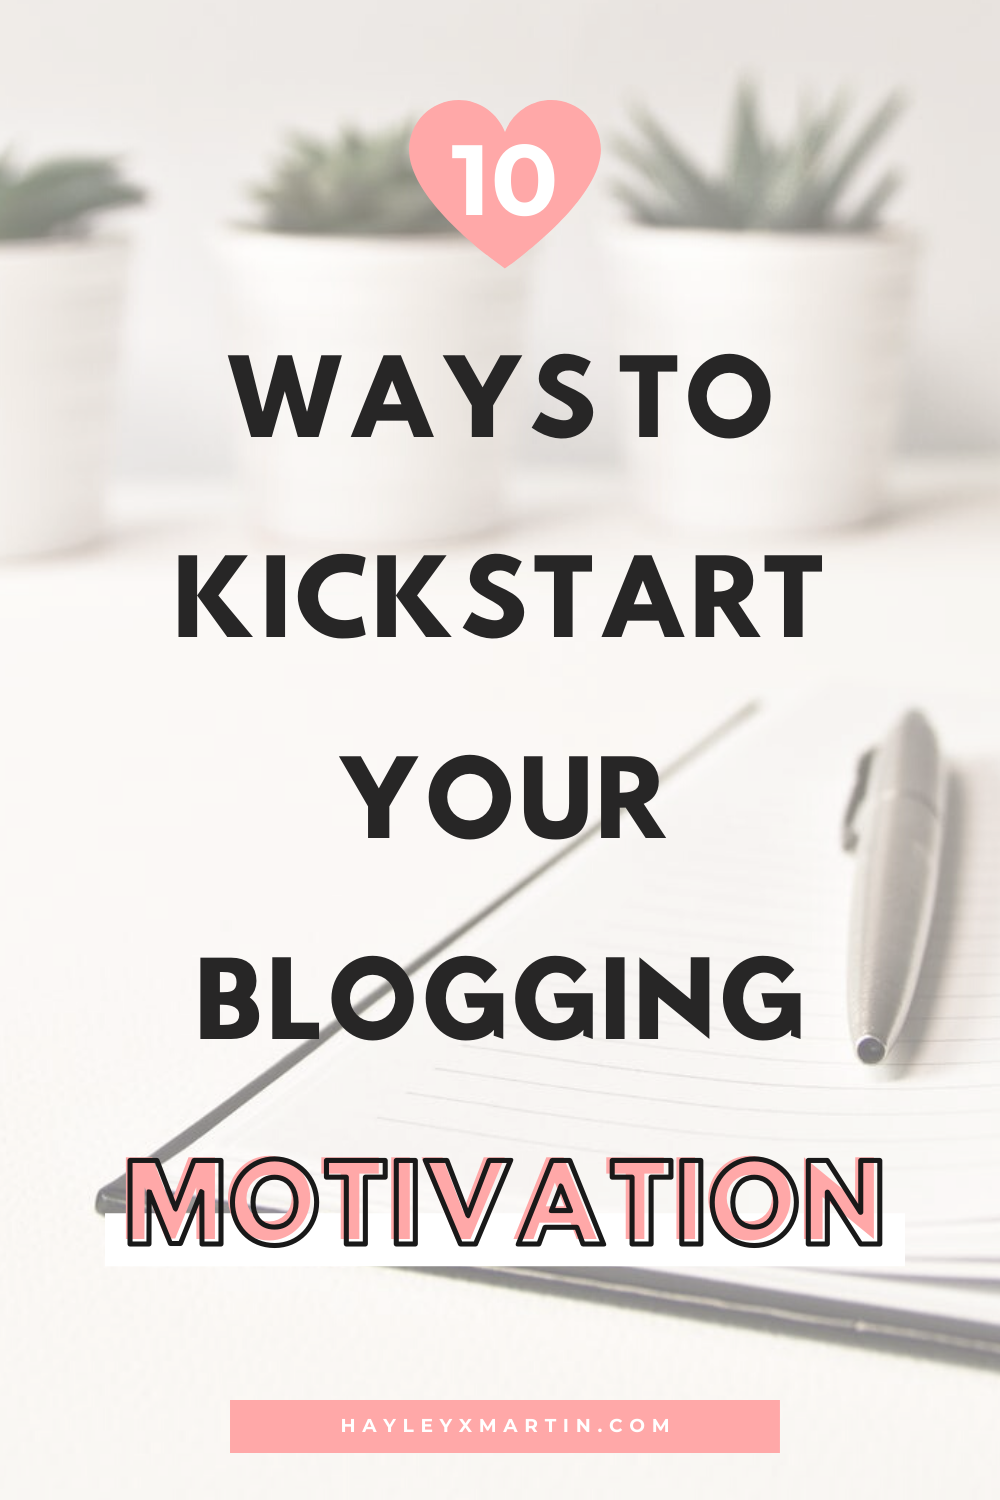 10 ways to kickstart your blogging motivation | hayleyxmartin